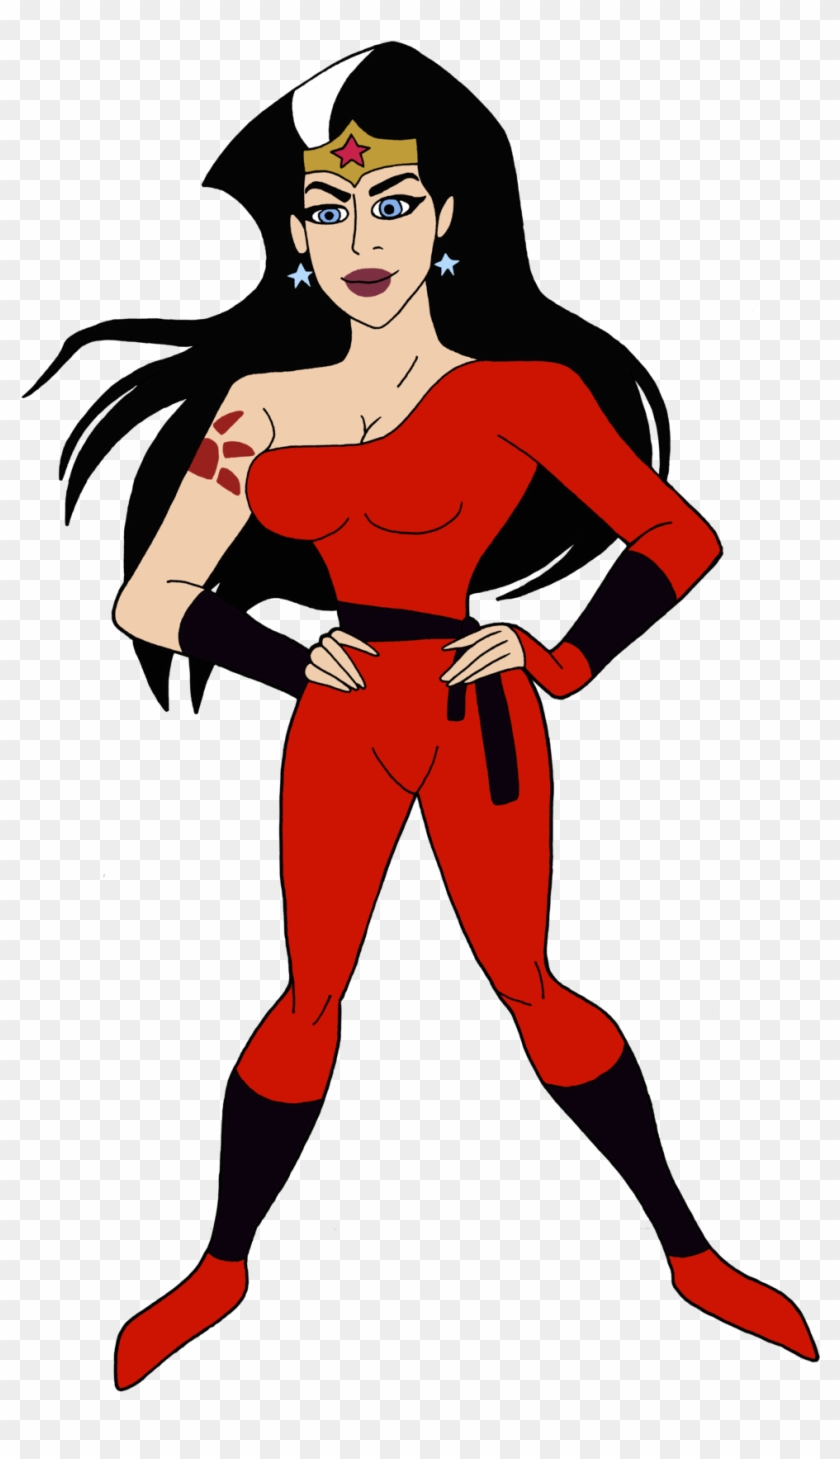 Renthegodofhumor Wonder Woman As Red Claw By Renthegodofhumor - Wonder Woman #652547